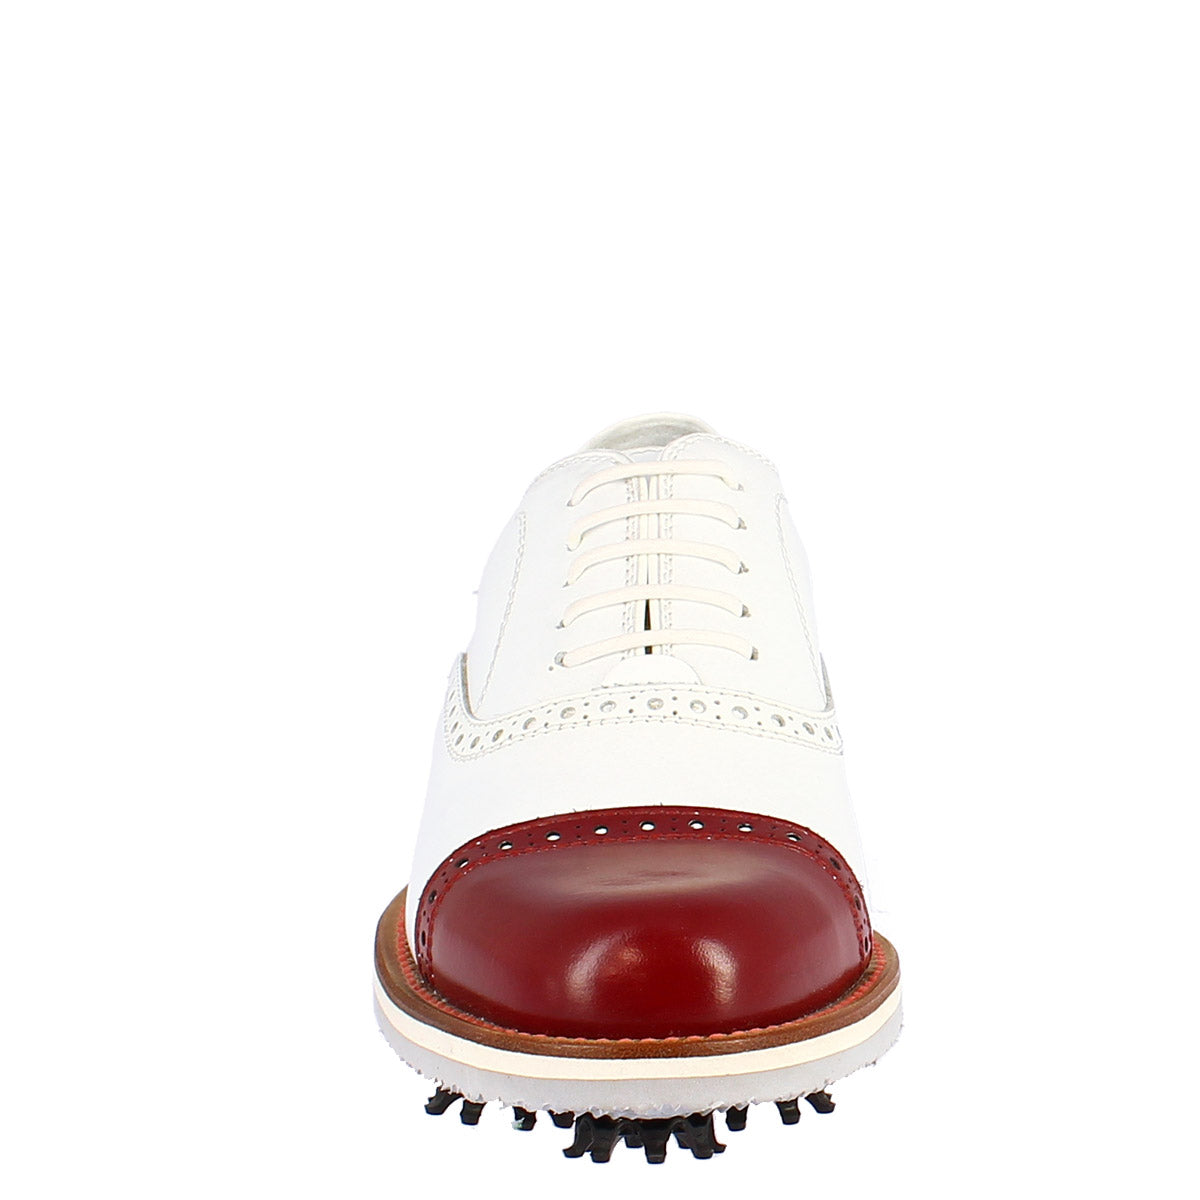 Chaussures de golf pour femmes fabriquées à la main en cuir blanc avec embout rouge